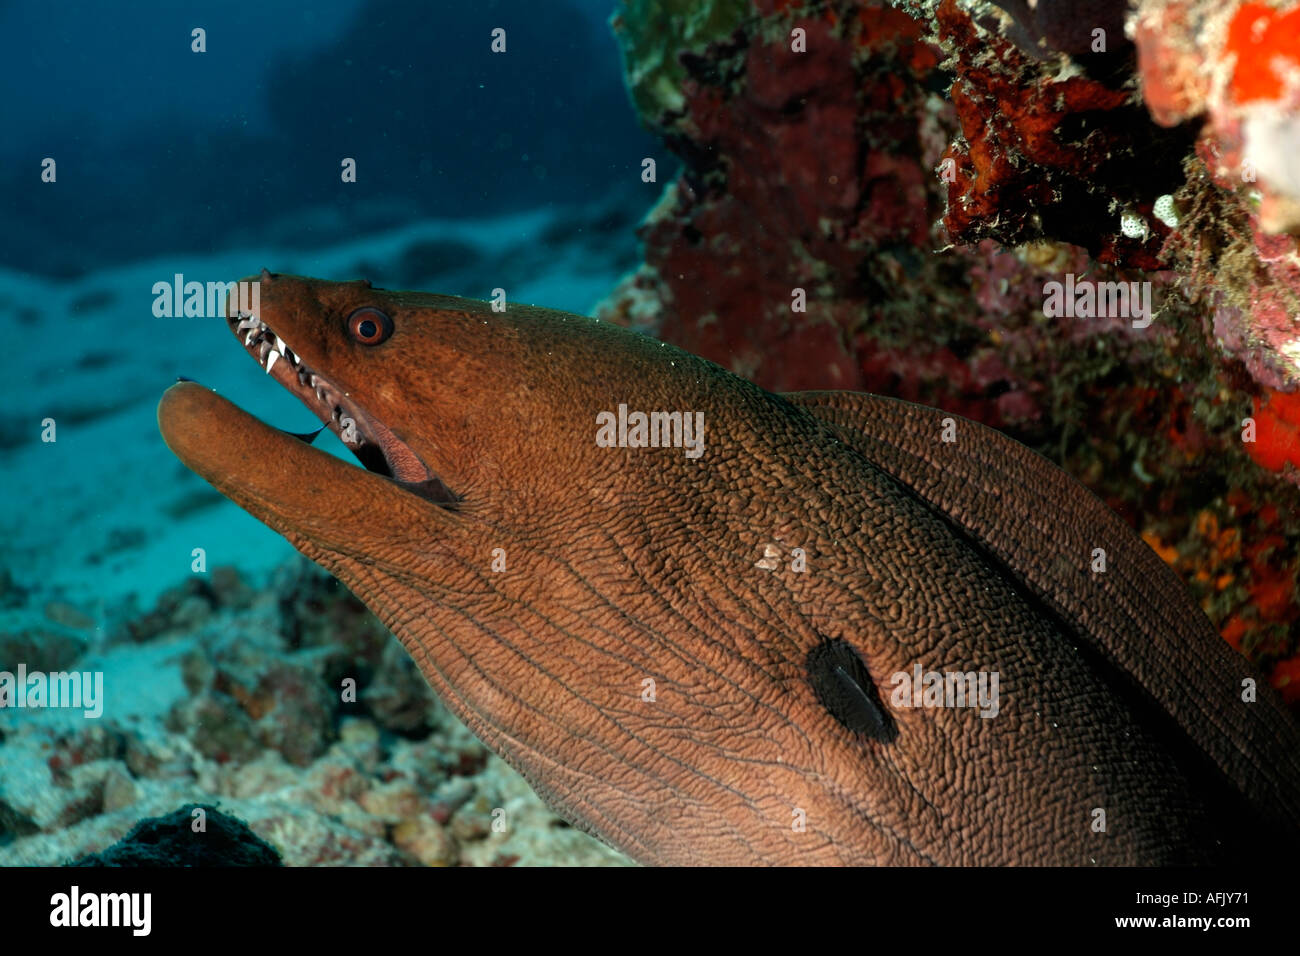 Anguilas morenas gigantes - Gymnothorax javanicus - asomándose por un agujero rocoso Foto de stock